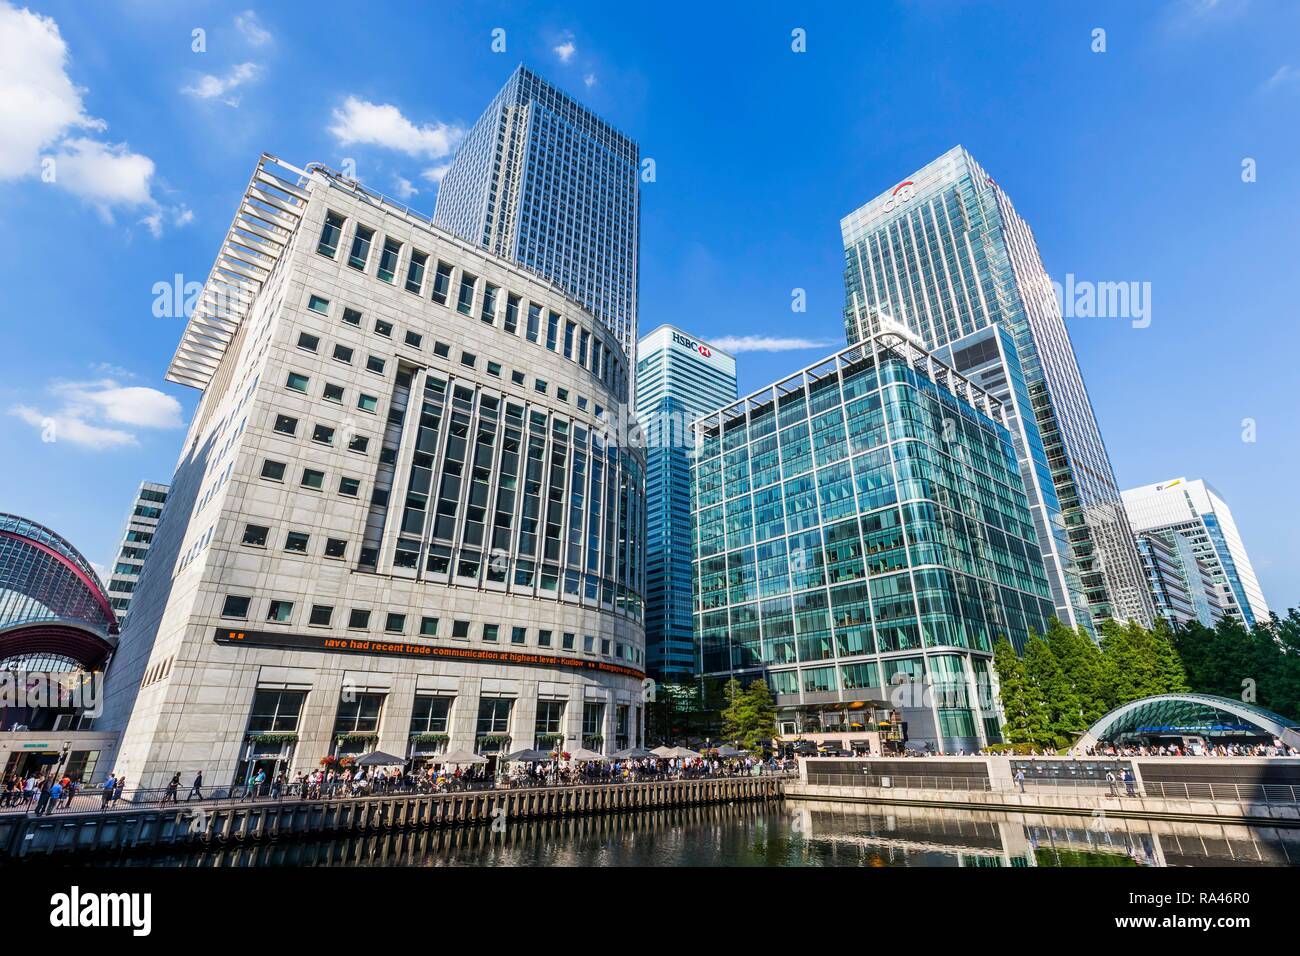 La sede de la Agencia de Noticias Thomson Reuters, Canary Wharf Tower, sede del Banco Citi Citigroup Center y oficinas centrales del banco HSBC Foto de stock